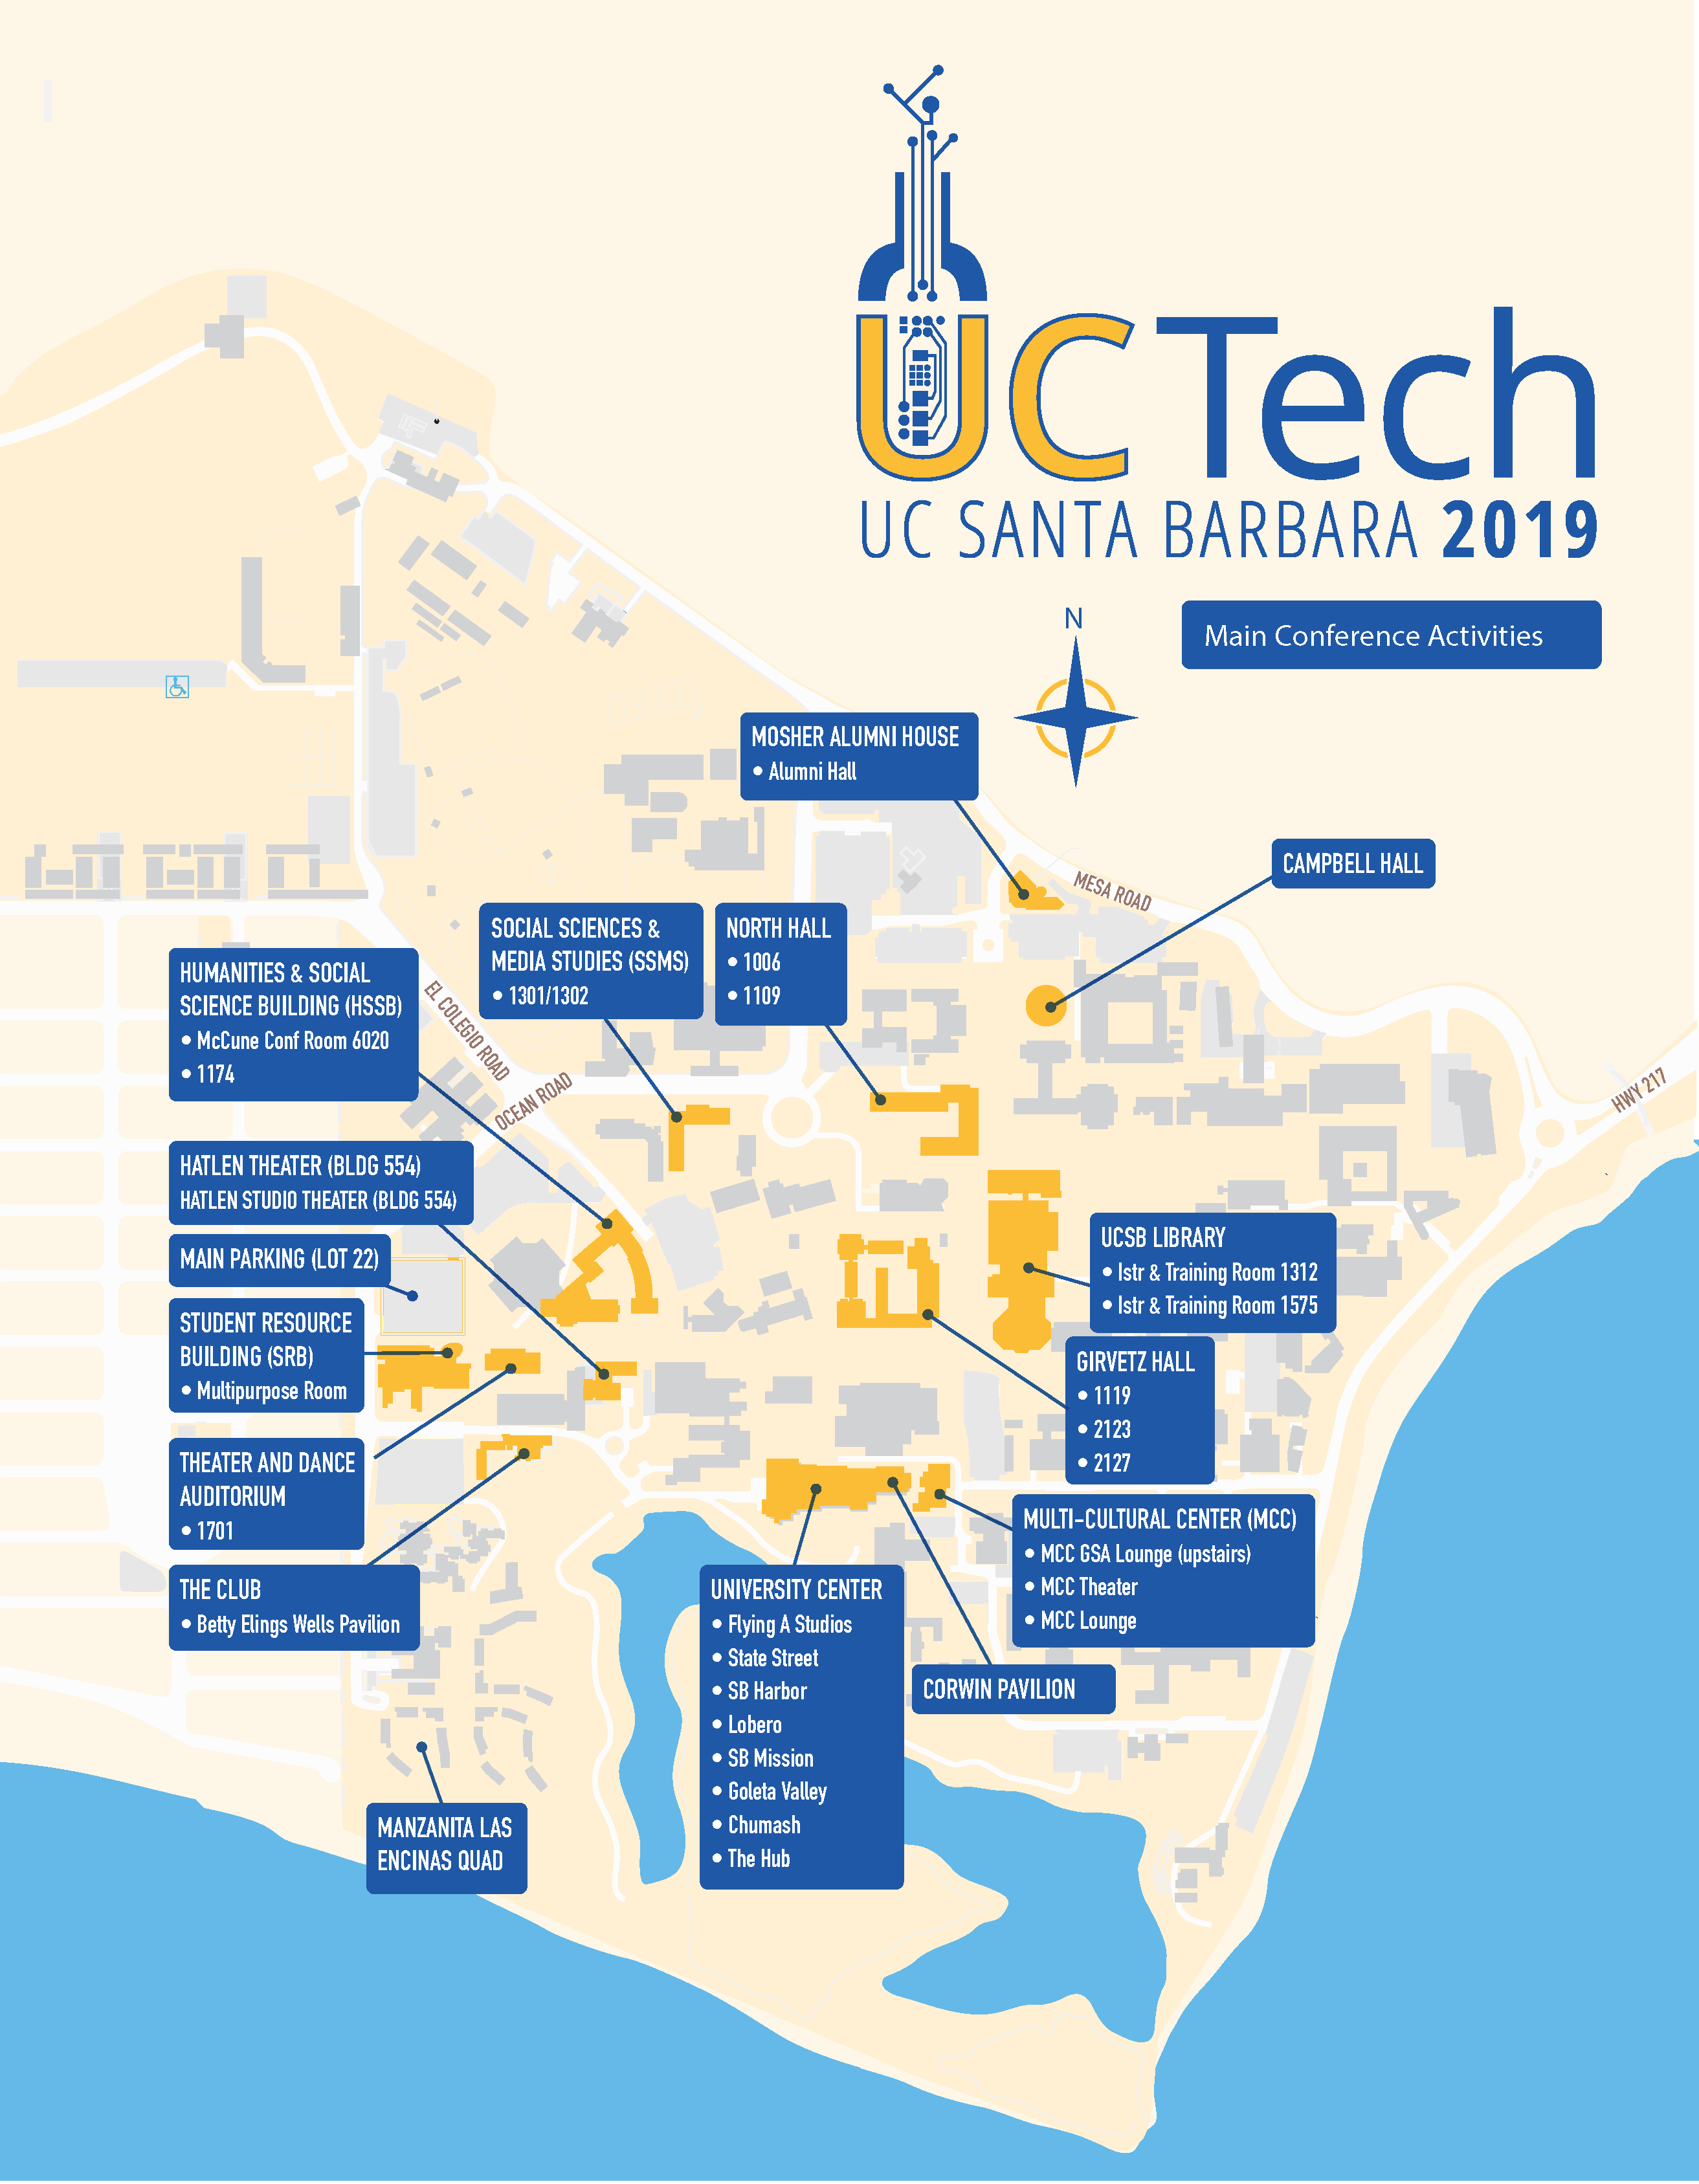 UCTech 2019 Venue Map